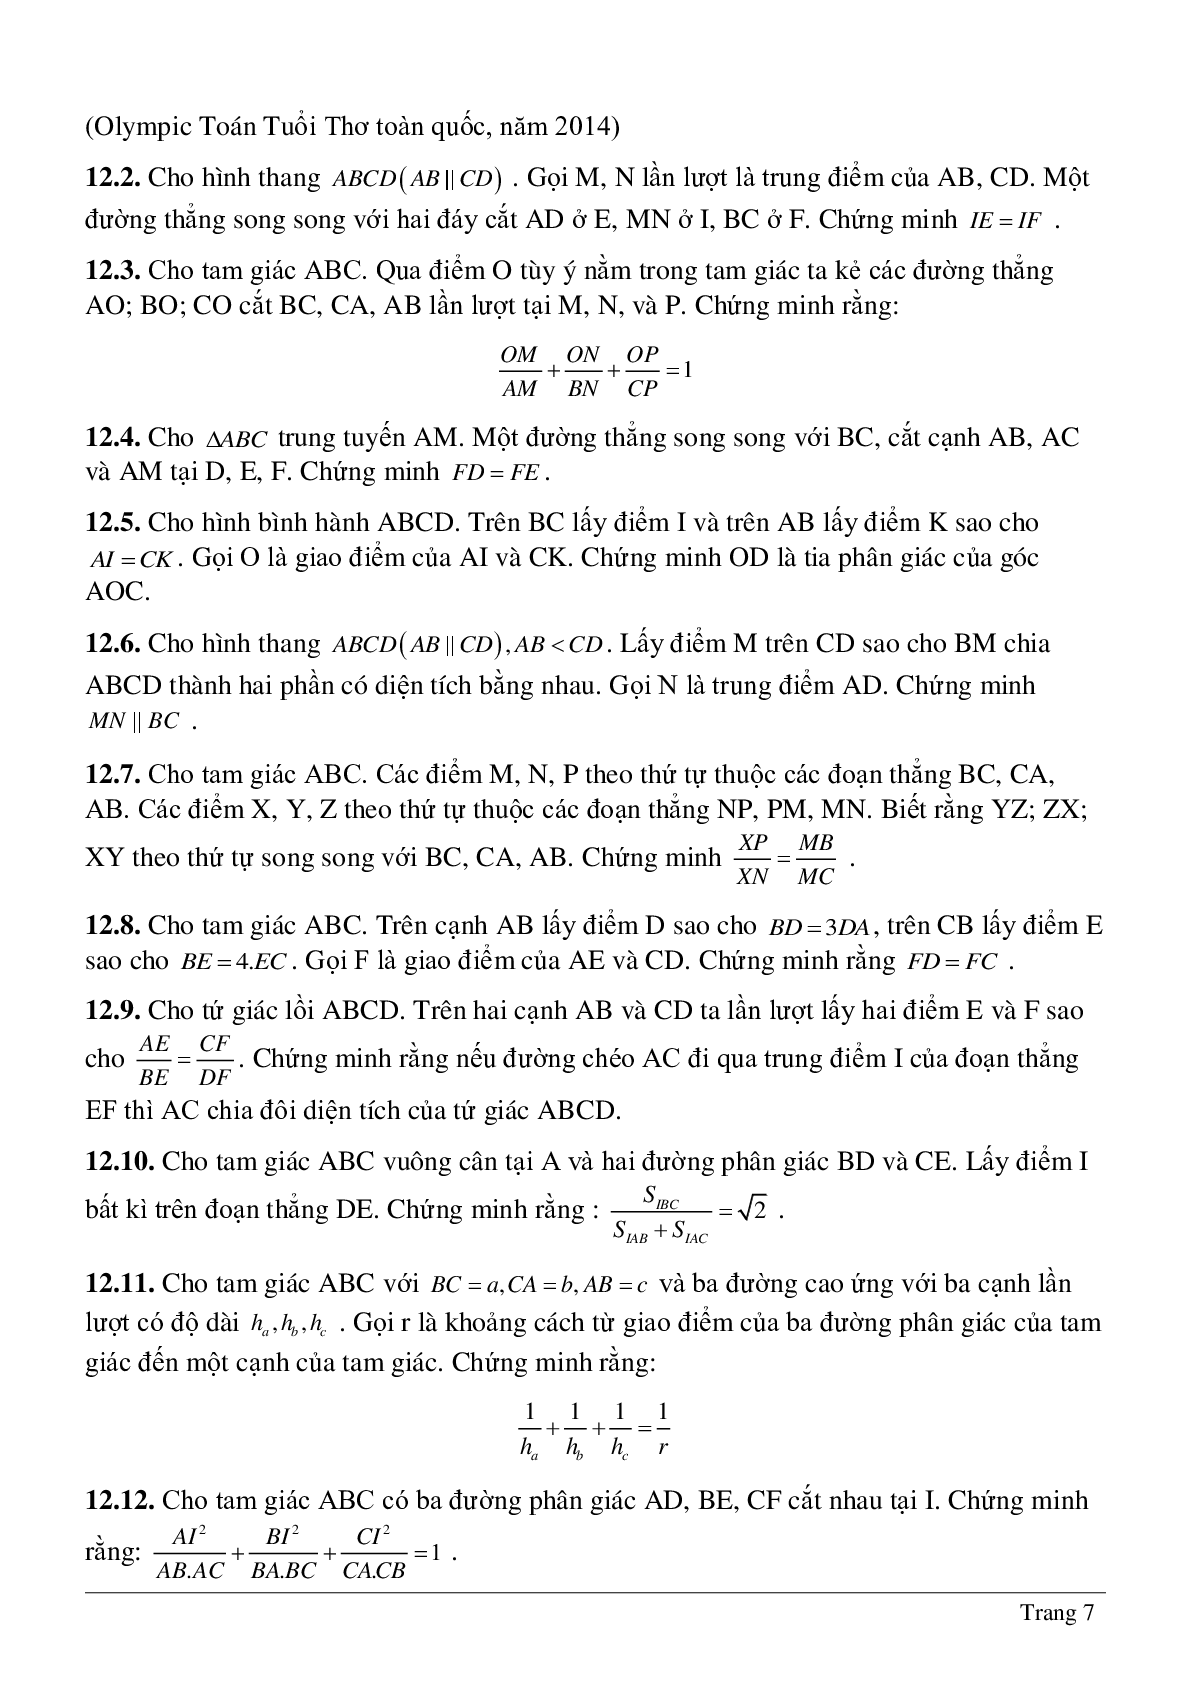 Phương pháp diện tích - Hình học toán 8 (trang 7)